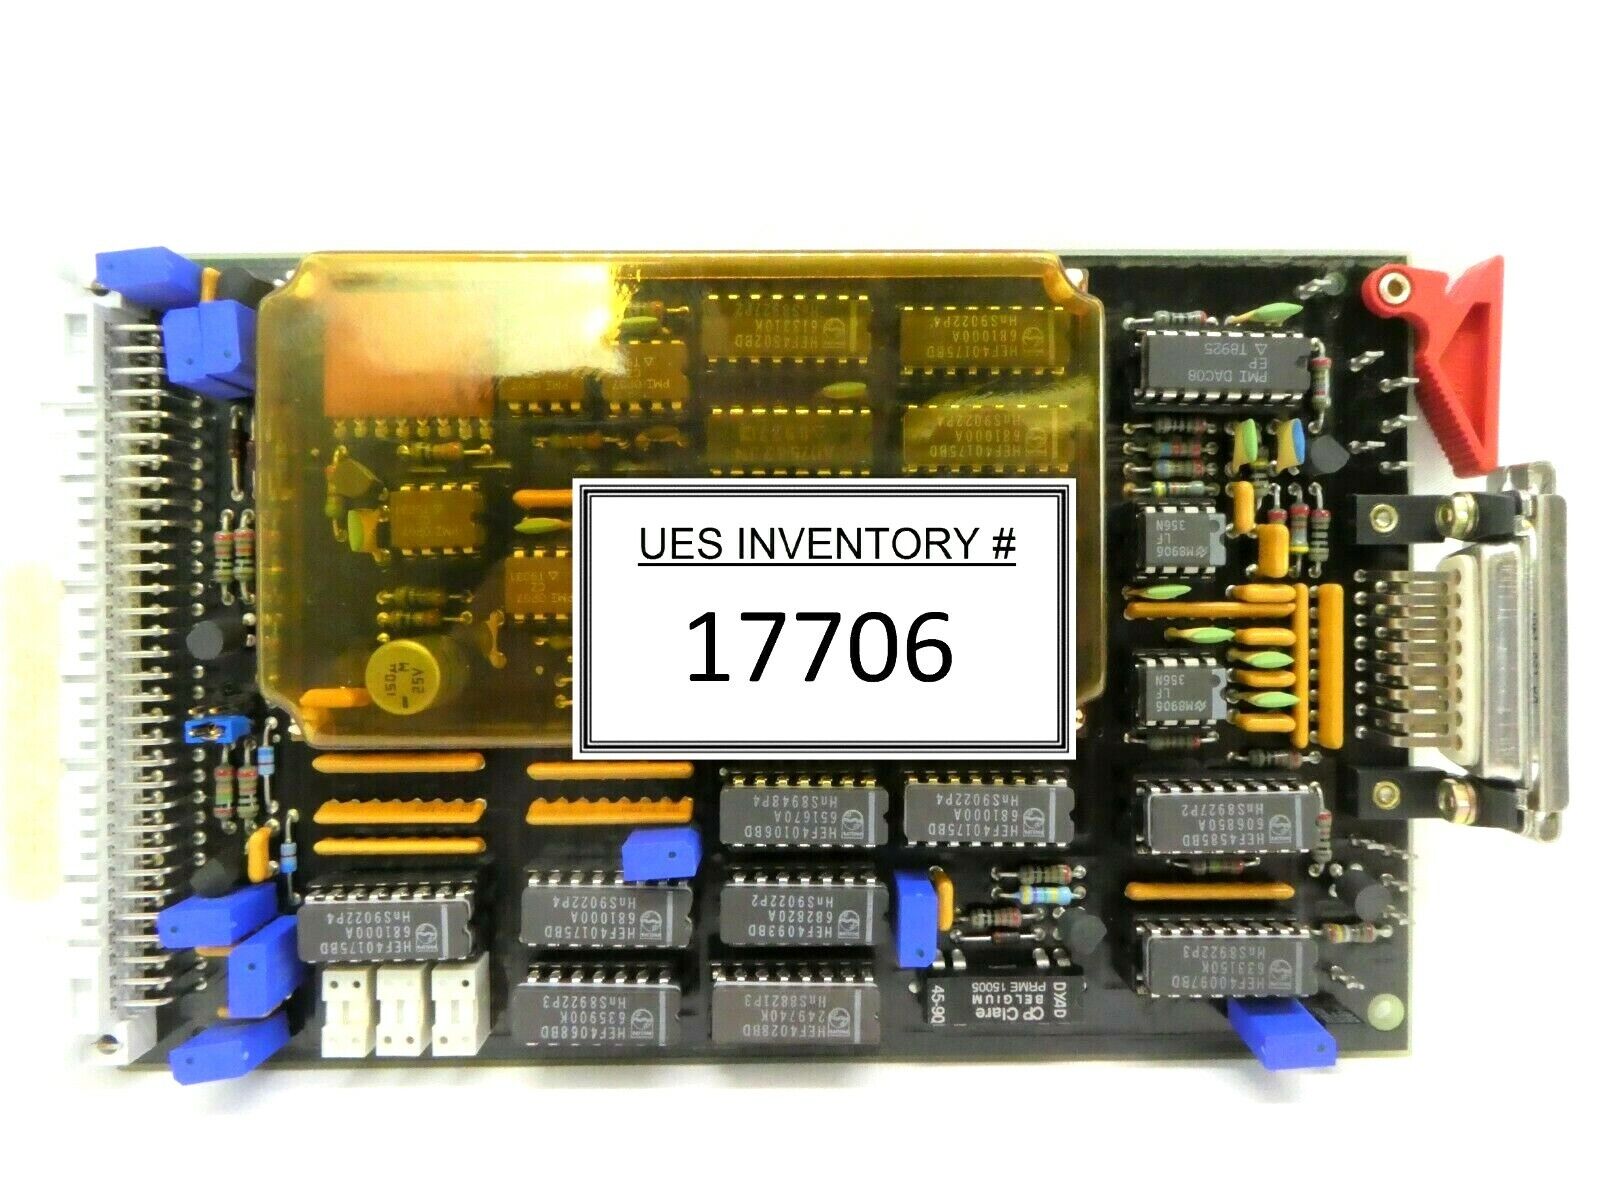 FEI Company 4022 192 70102 Processor PCB Card REF 7010 XL 30 ESEM Working Spare